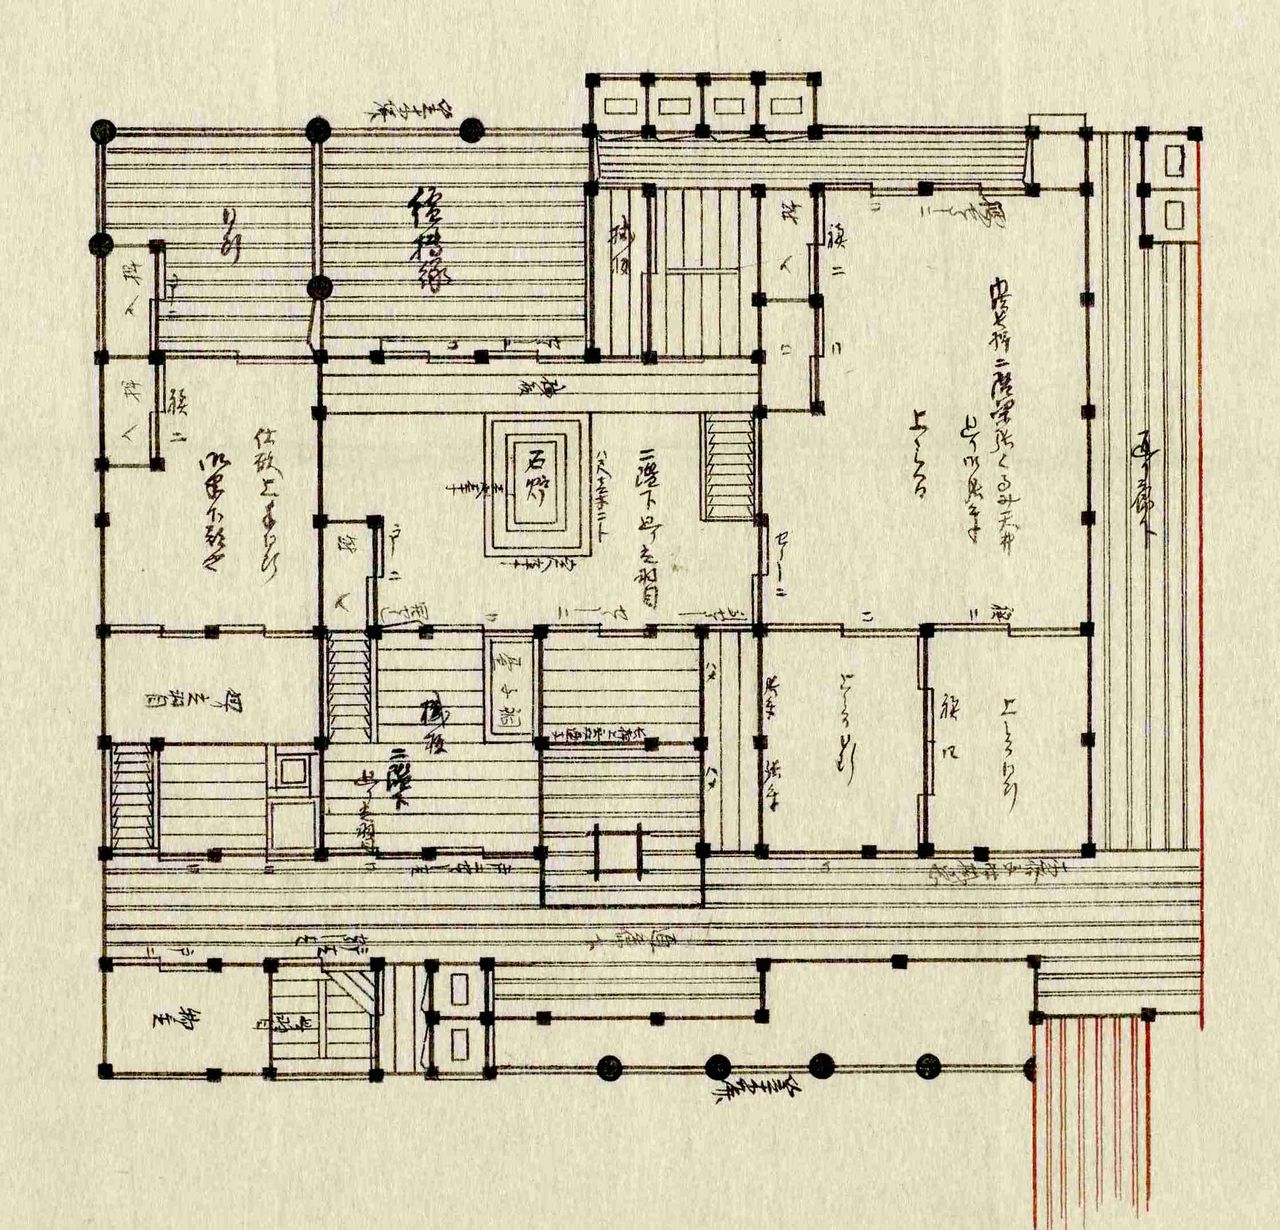 「御半下部屋地繪圖」乃為「御末」們居住之雜居室。一般推測，或許十幾個人在此房間共同生活。藏於東京都立中央圖書館特別文庫室